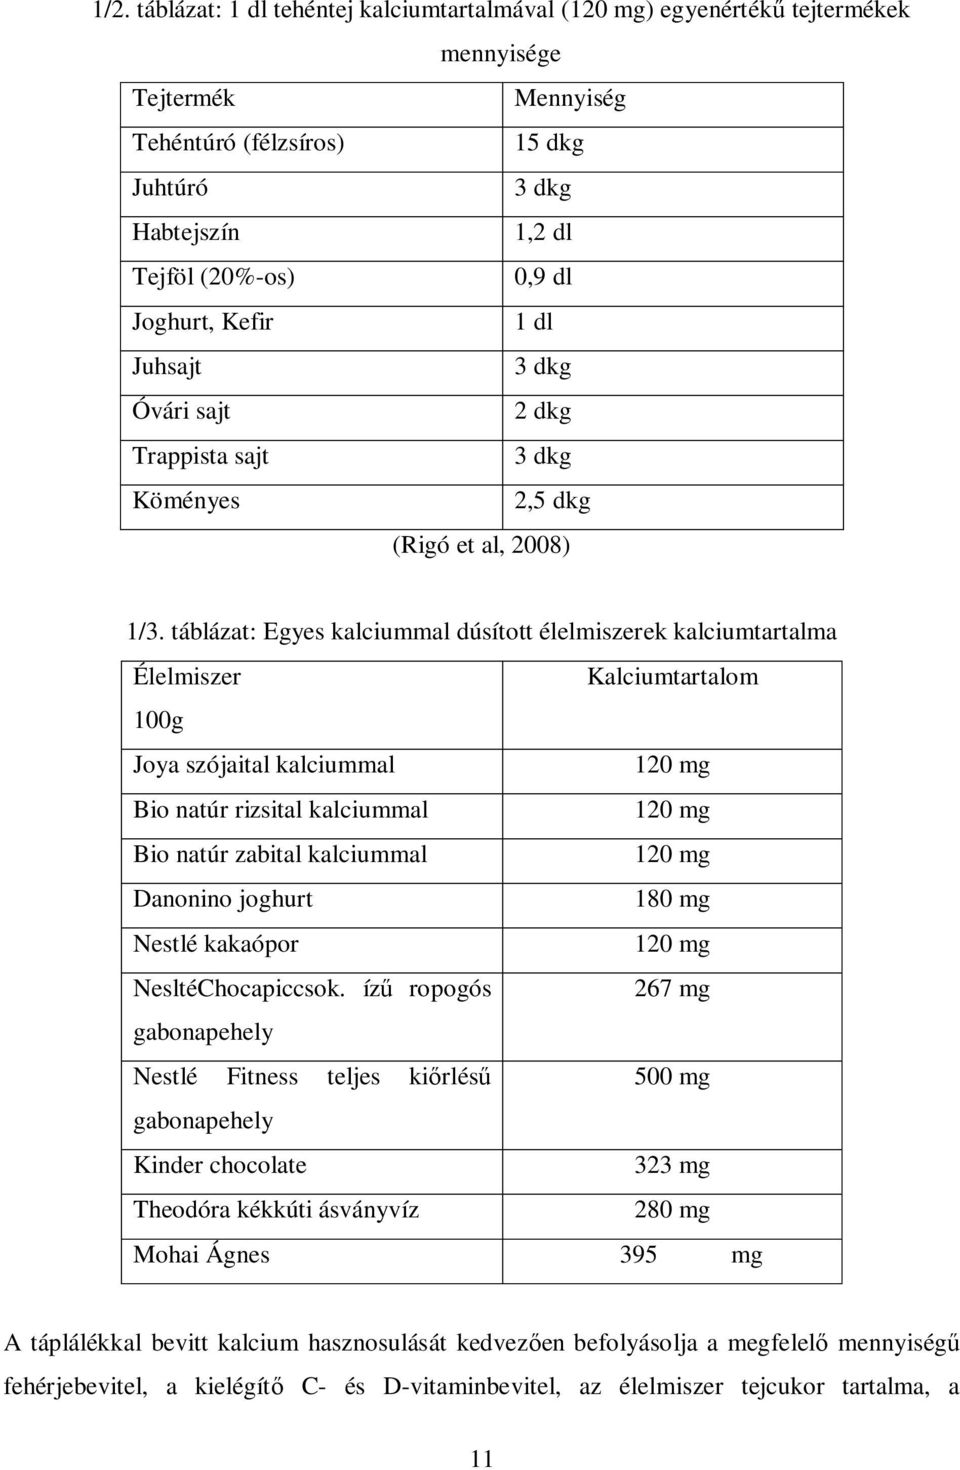 táblázat: Egyes kalciummal dúsított élelmiszerek kalciumtartalma Élelmiszer Kalciumtartalom 100g Joya szójaital kalciummal 120 mg Bio natúr rizsital kalciummal 120 mg Bio natúr zabital kalciummal 120